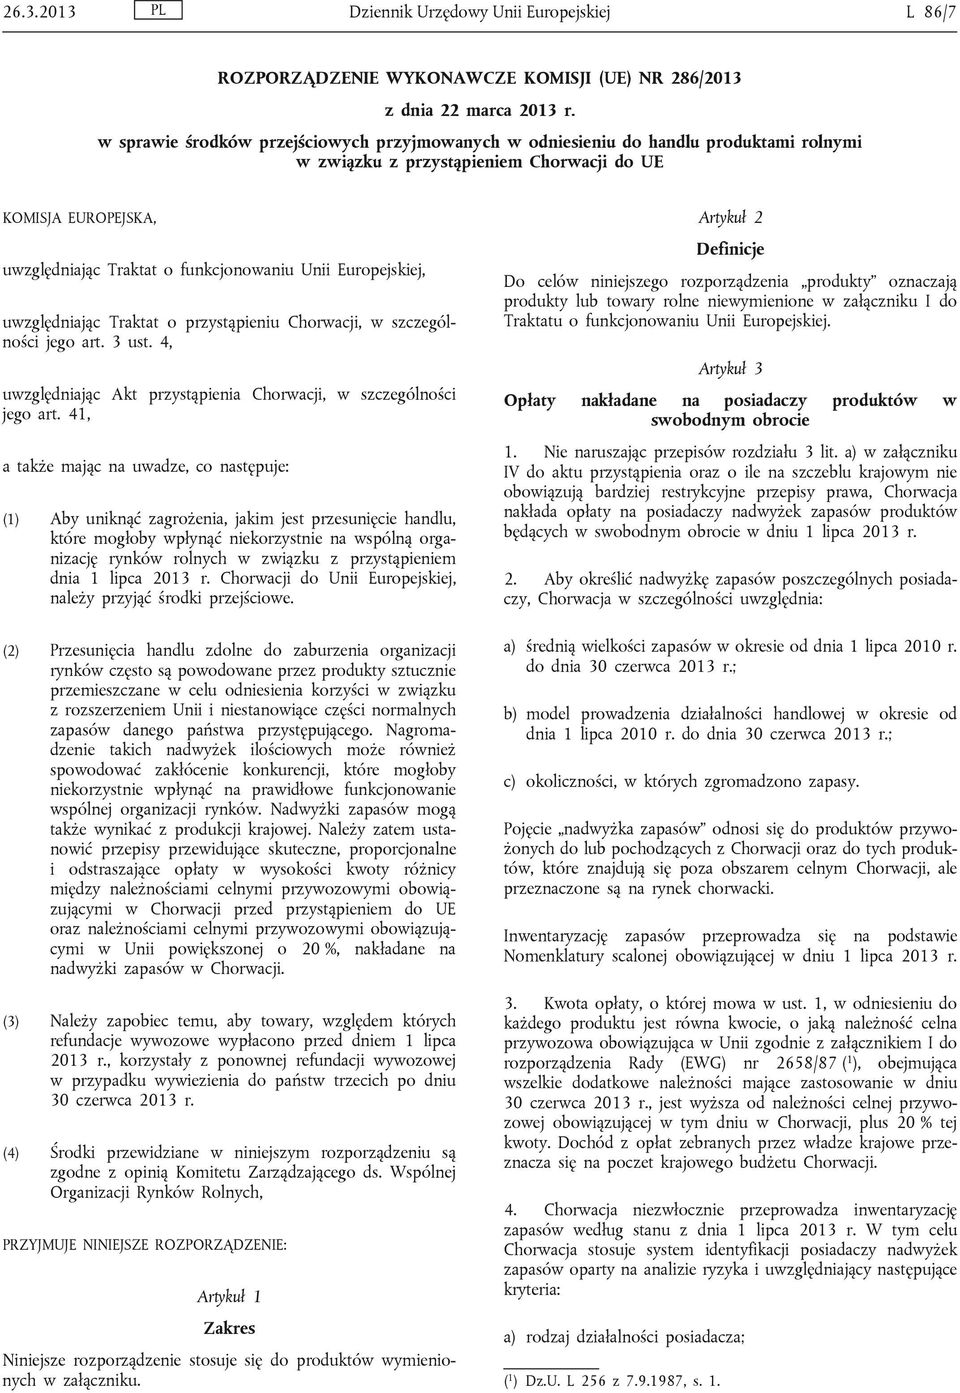 Europejskiej, uwzględniając Traktat o przystąpieniu Chorwacji, w szczególności jego art. 3 ust. 4, uwzględniając Akt przystąpienia Chorwacji, w szczególności jego art.